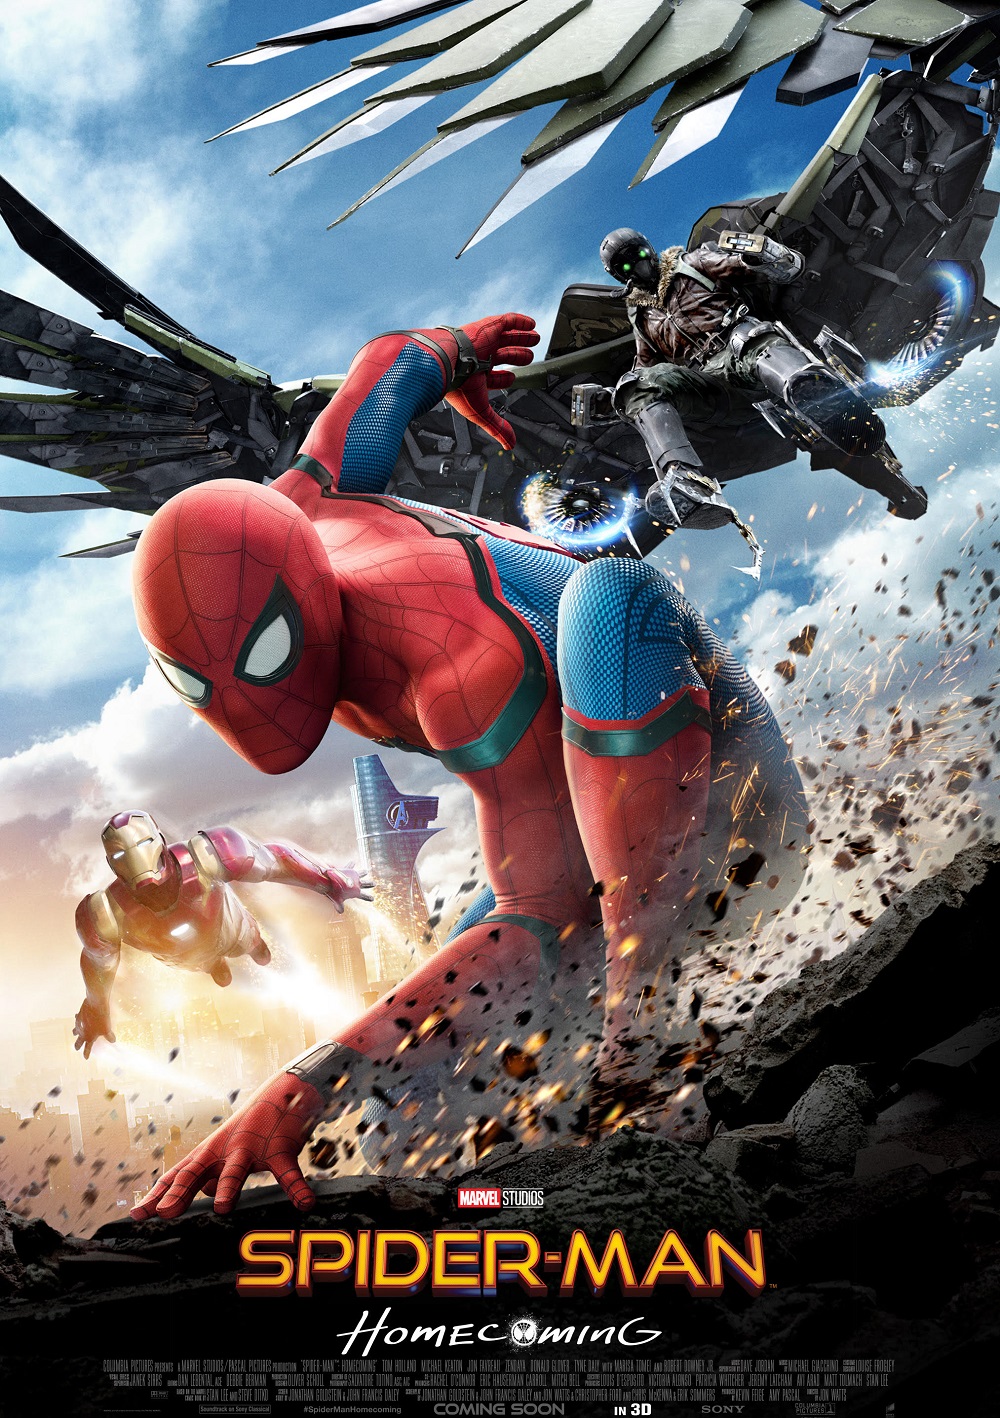 9. Spider-Man: Homecoming / „Спайдър-Мен: Завръщане у дома“ – Безспорно най-голямото събитие за последните три години, свързано с Marvel, беше споразумението между студиото и Universal, по силата на което Спайдър-Мен, вероятно най-популярният комиксов герой на Marvel в историята, се върна под тяхната филмова опека. Питър Паркър, изпълнен от младия Том Холанд, направи забележителен дебют в Captain America: Civil War и се сдоби с финансово успешен солов филм през миналата година, макар и неустоимо зловещият Майкъл Кийтън да го засенчи в ролята на антагониста.